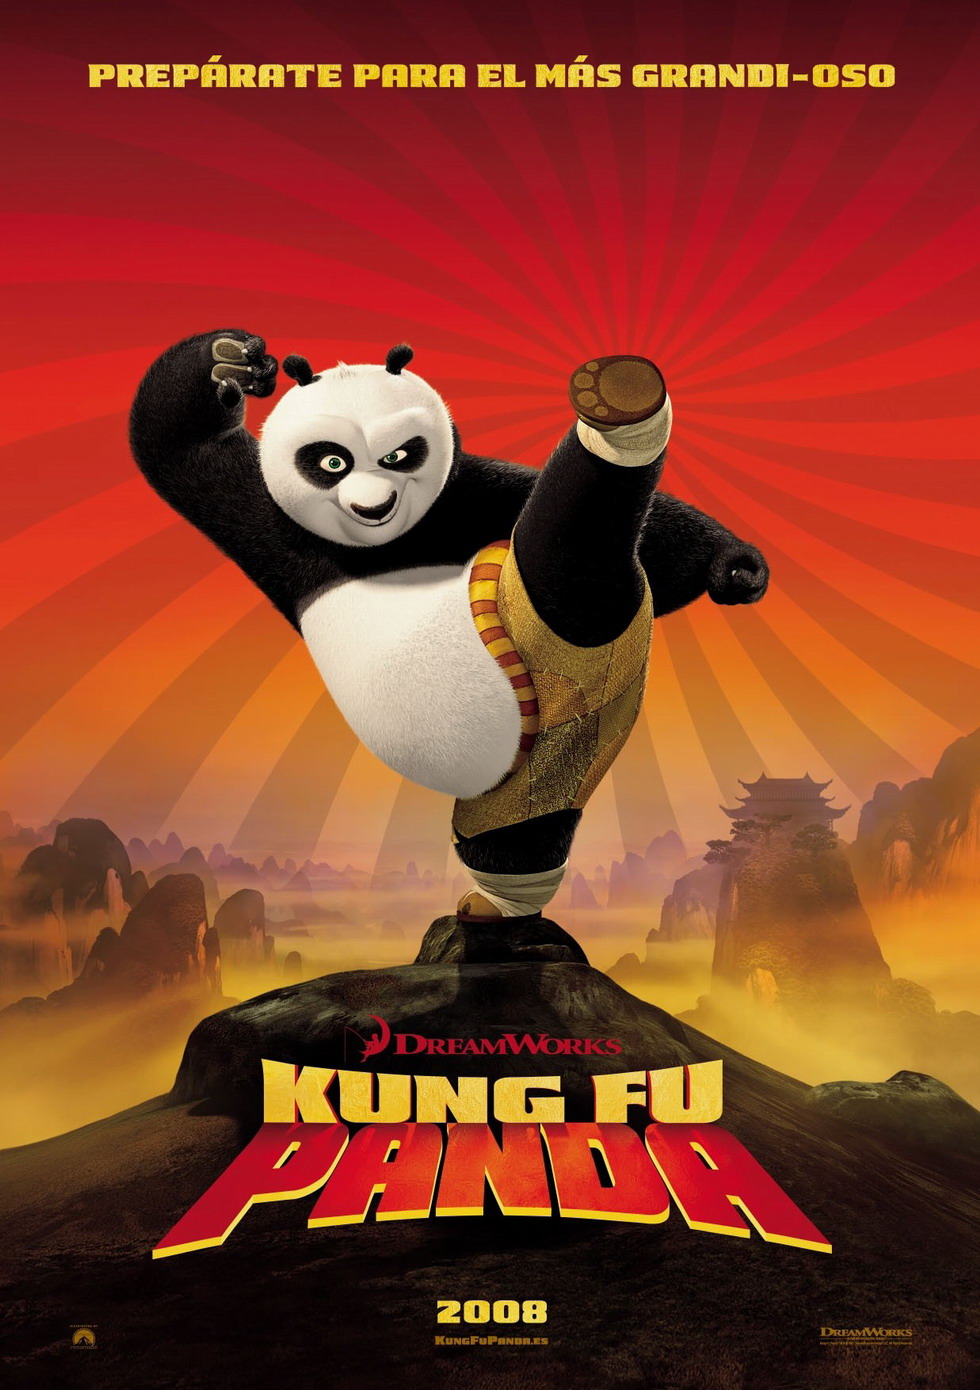 功夫熊猫 是一部以中国功夫为主题的美国动作喜剧电影,影片以中国古代